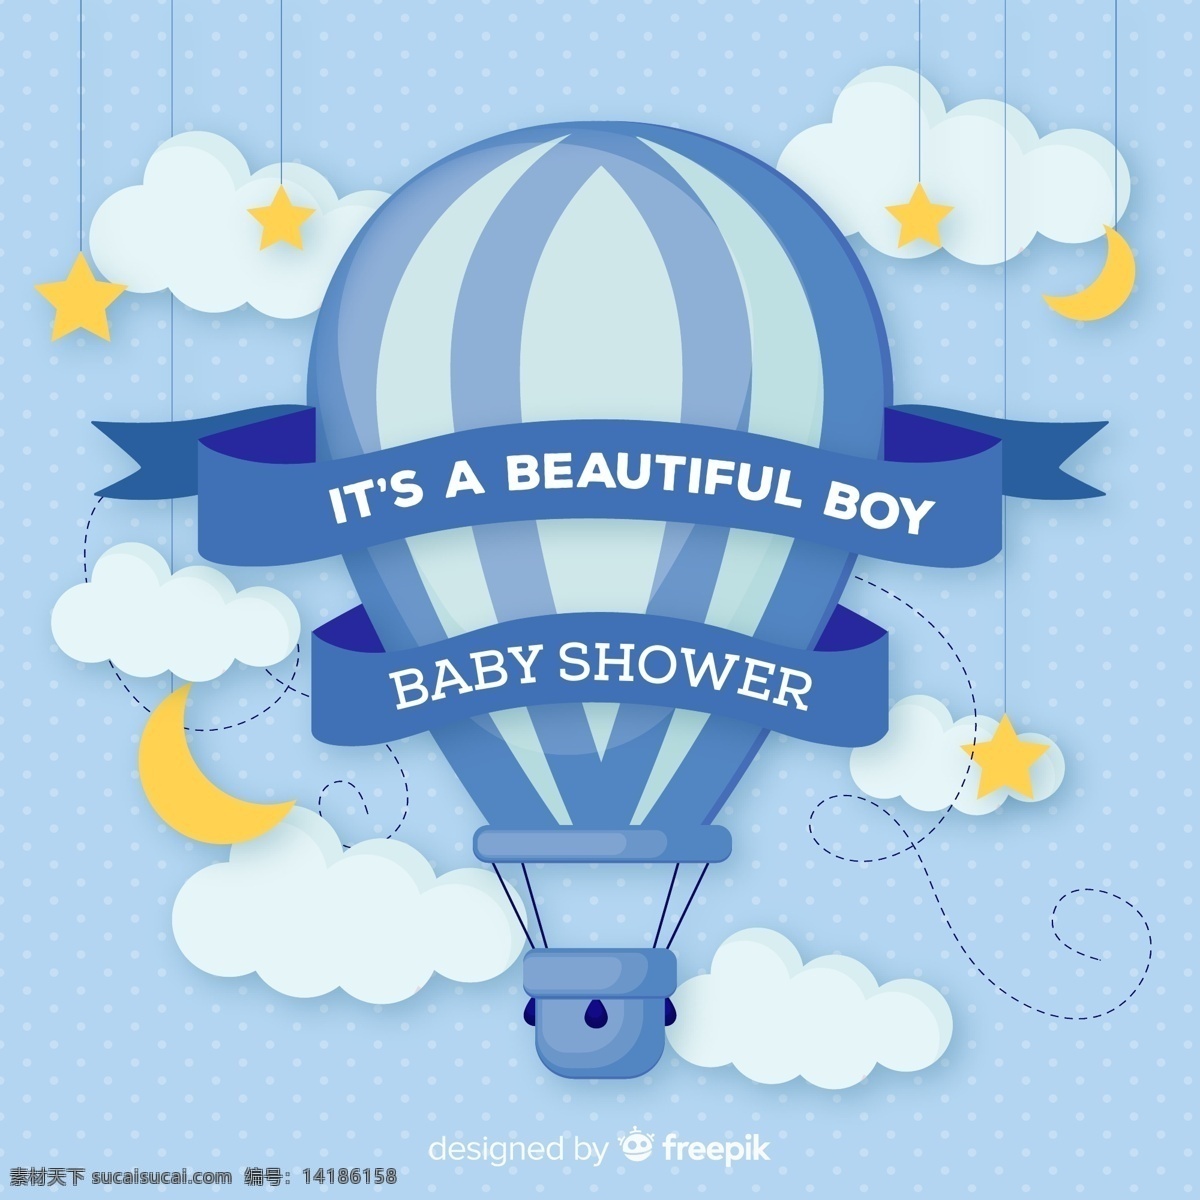 蓝色 热气球 迎 婴 派对 海报 矢量图 迎婴 矢量素材